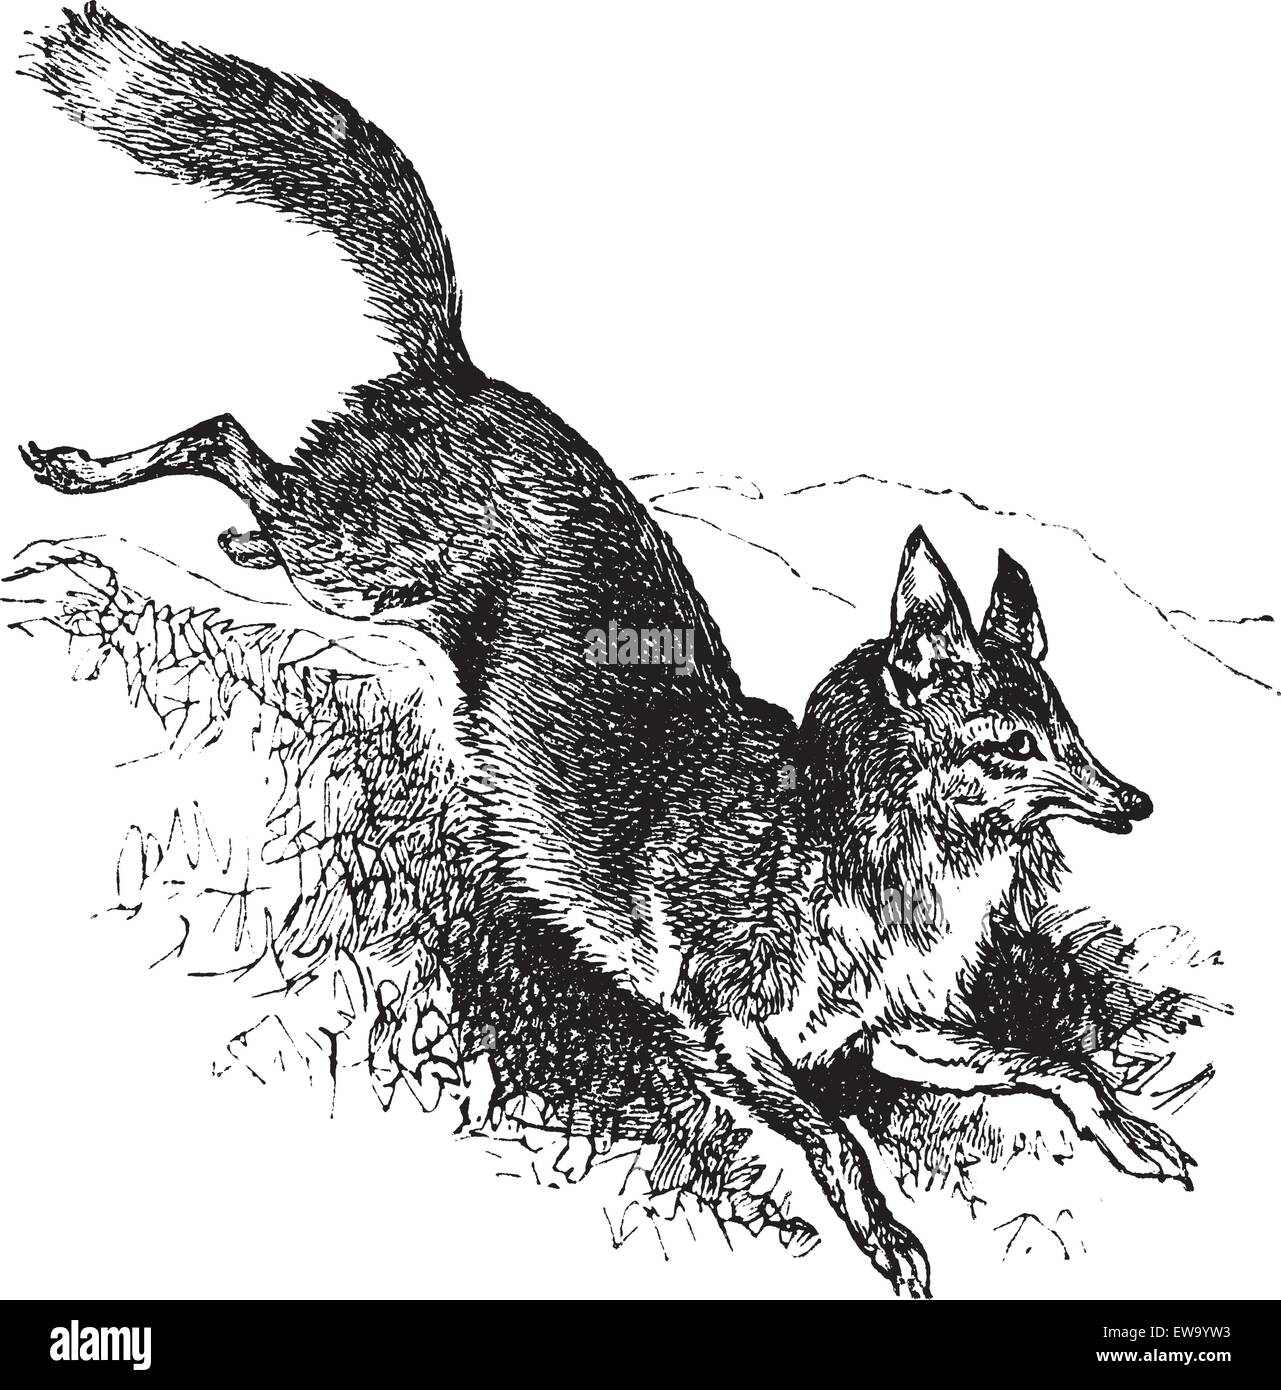 Golden jackal or Canis aureus vintage engraving. Old engraved illustration of alert canis aureus. Stock Vector